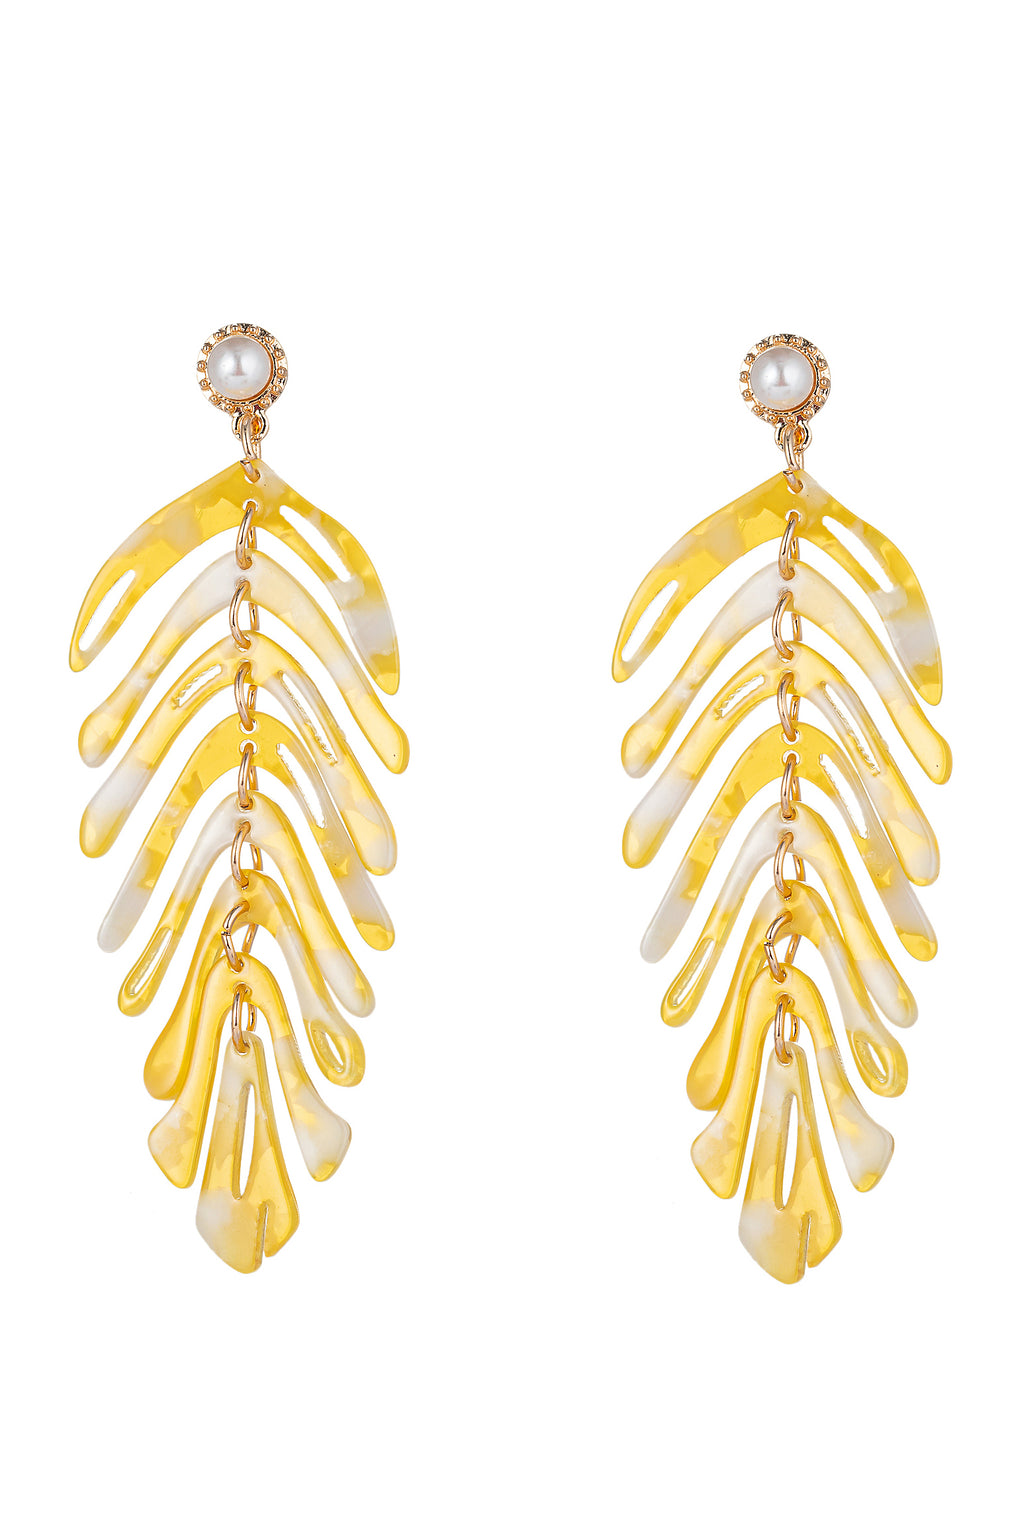 Gold acrylic leaf drop earrings.